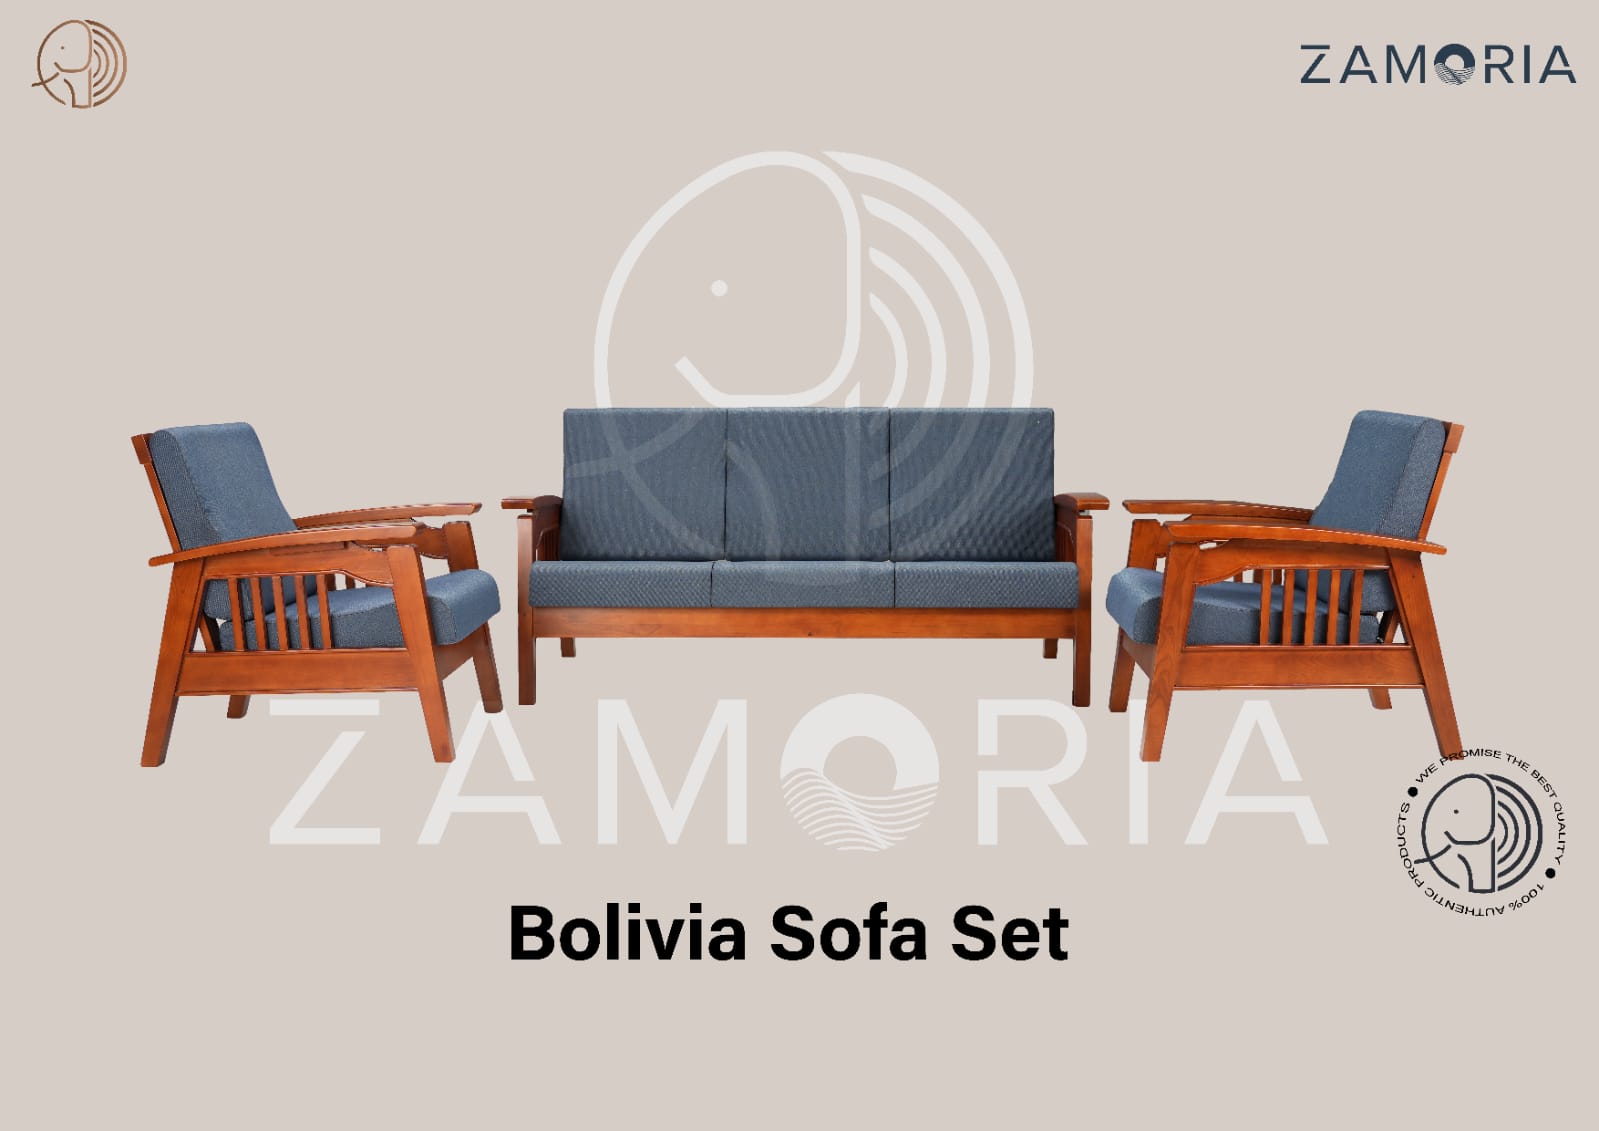 Bolivia Wooden Sofa